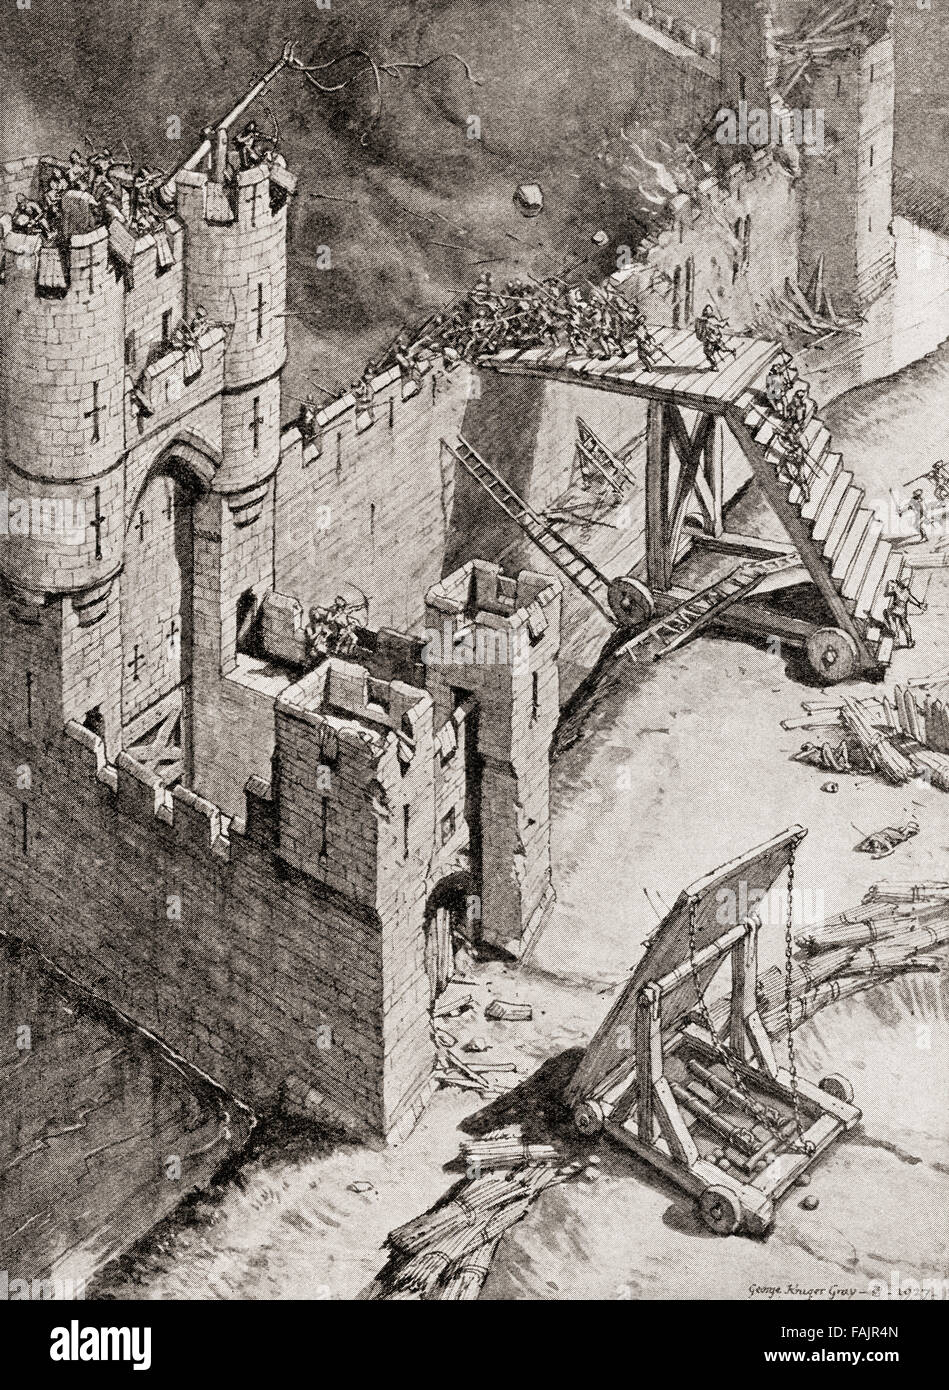 Die Belagerung einer Burg im 14. Jahrhundert.  Ein Waffenlosen Kampf auf einer Skalierung Leiter gegen den Zinnen geworfen, während die Garnison Steinen aus einem Katapult schleudern. Stockfoto